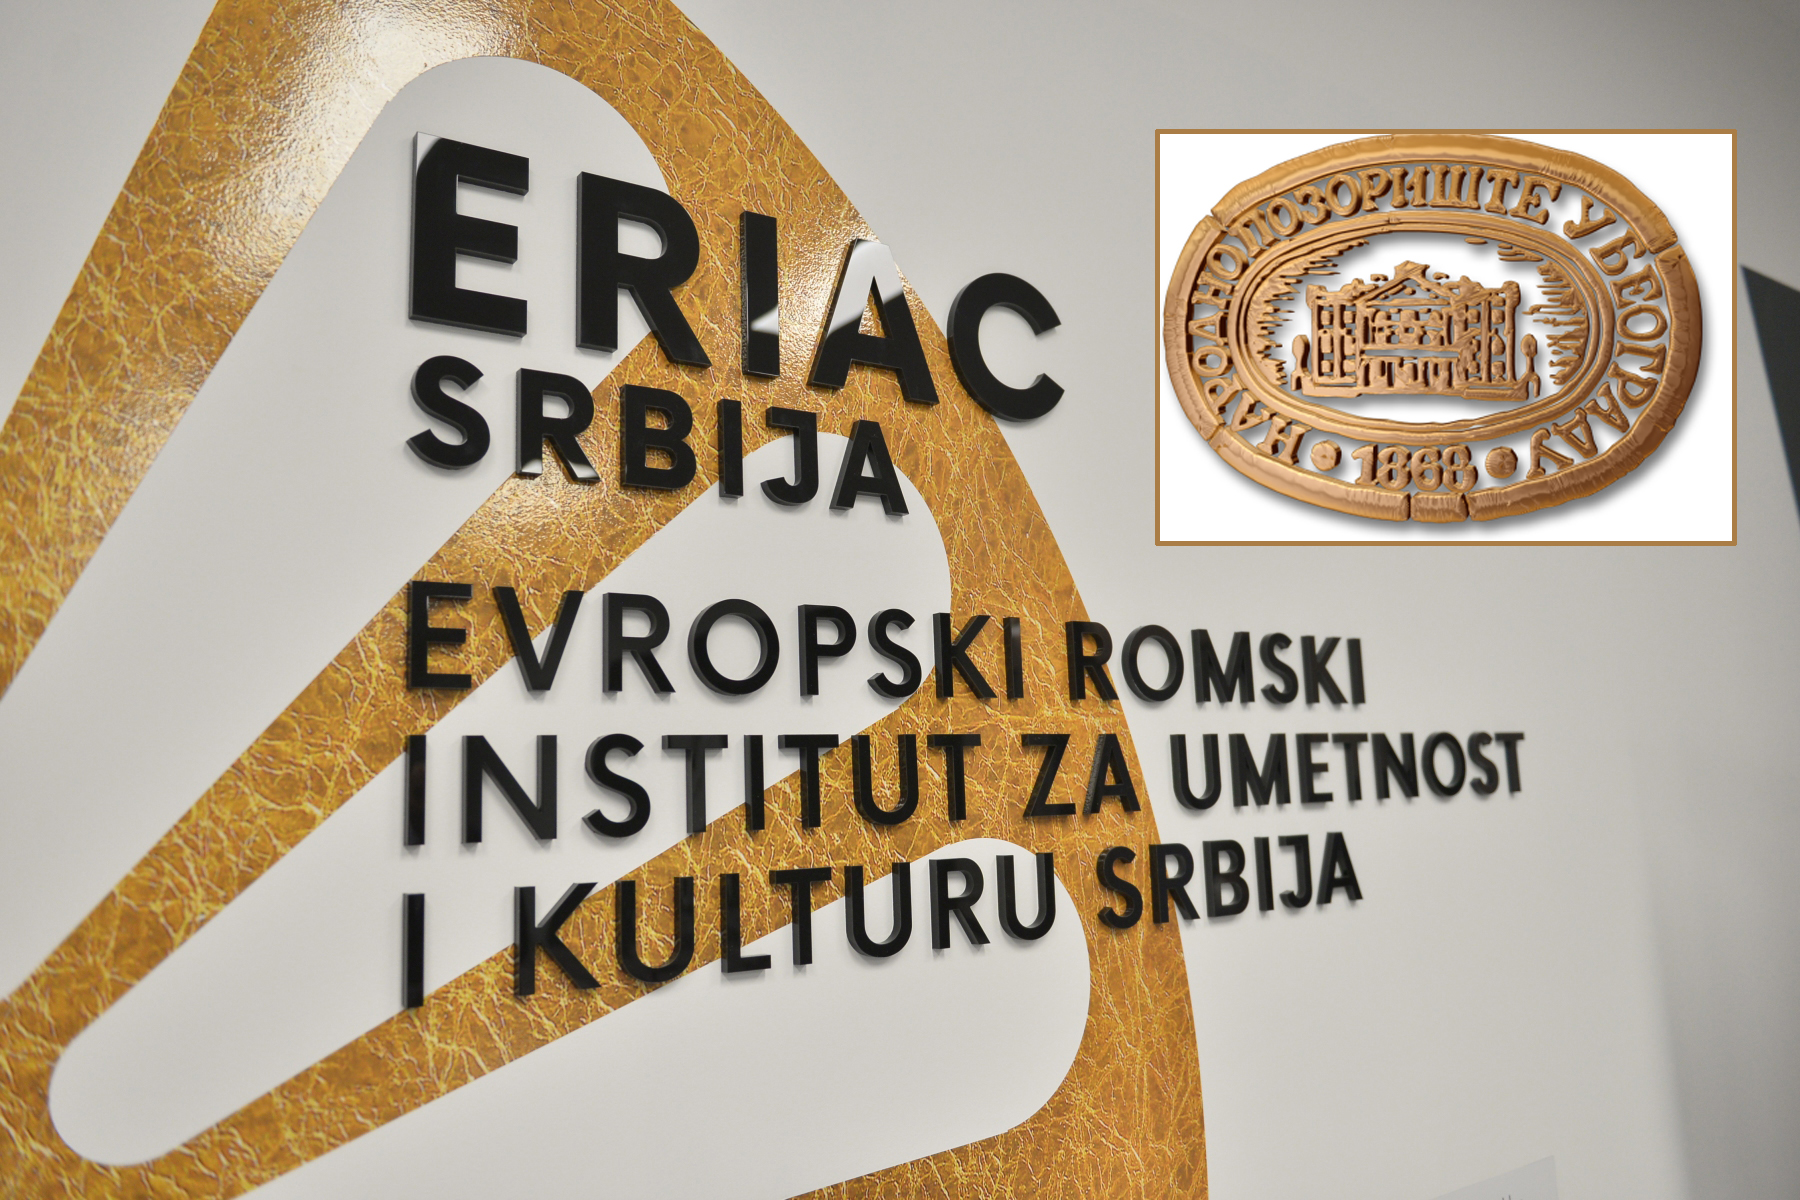 ERIAC Srbija, Evropski romski institut za umetnost i kulturu Srbija, Narodno pozorište